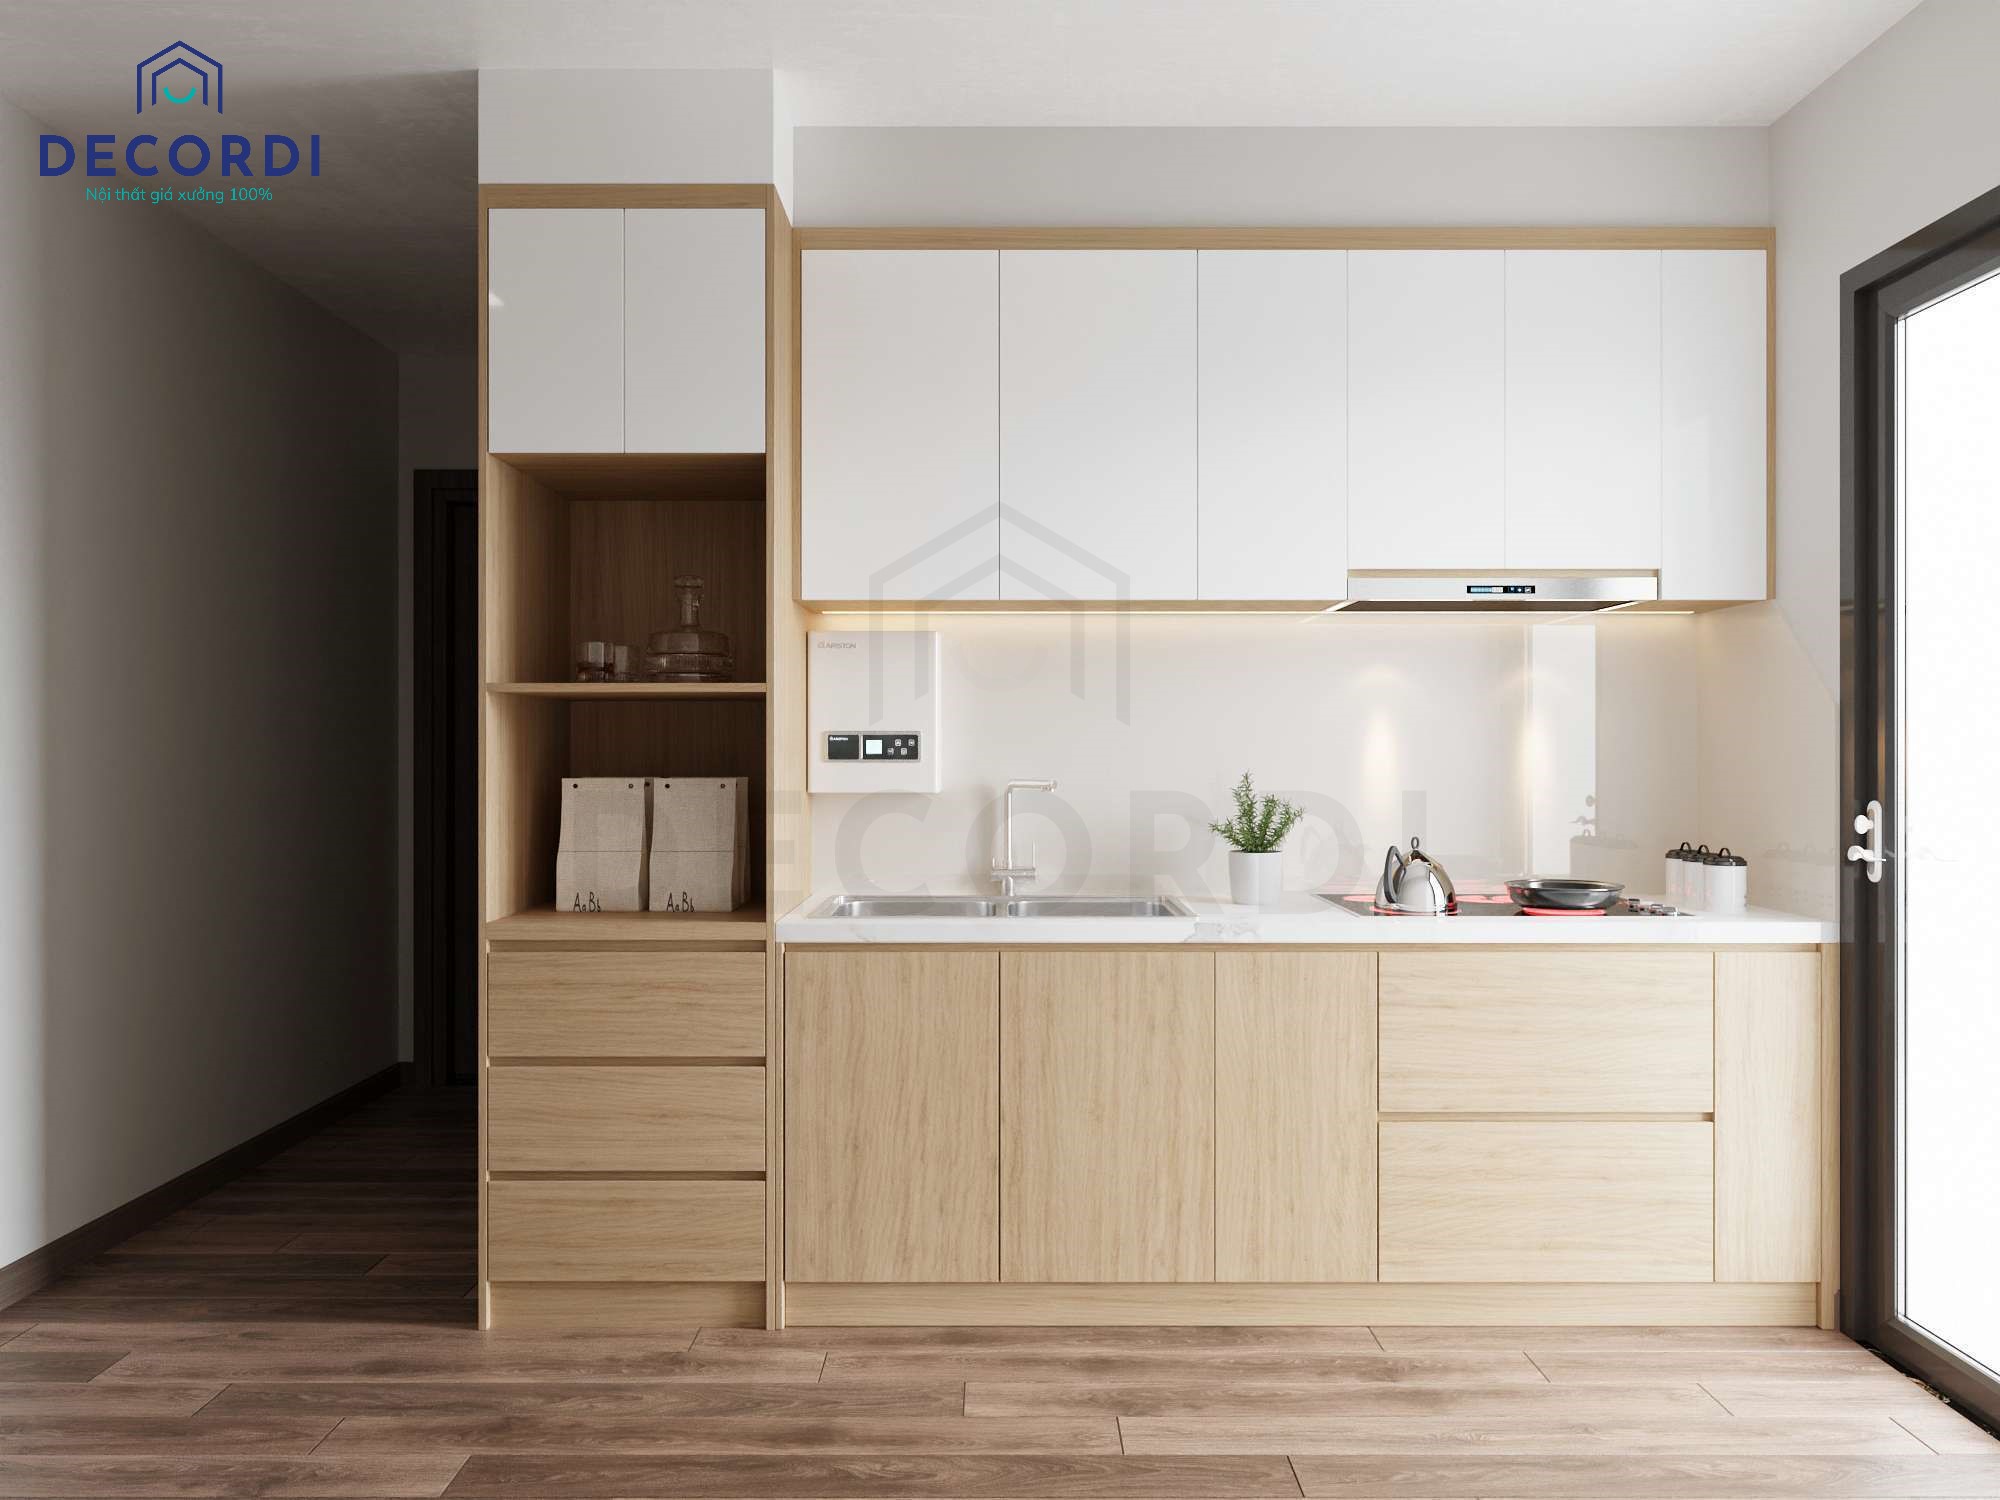  Hệ tủ bếp chữ I gỗ công nghiệp rất thích hợp cho không gian căn hộ nhỏ